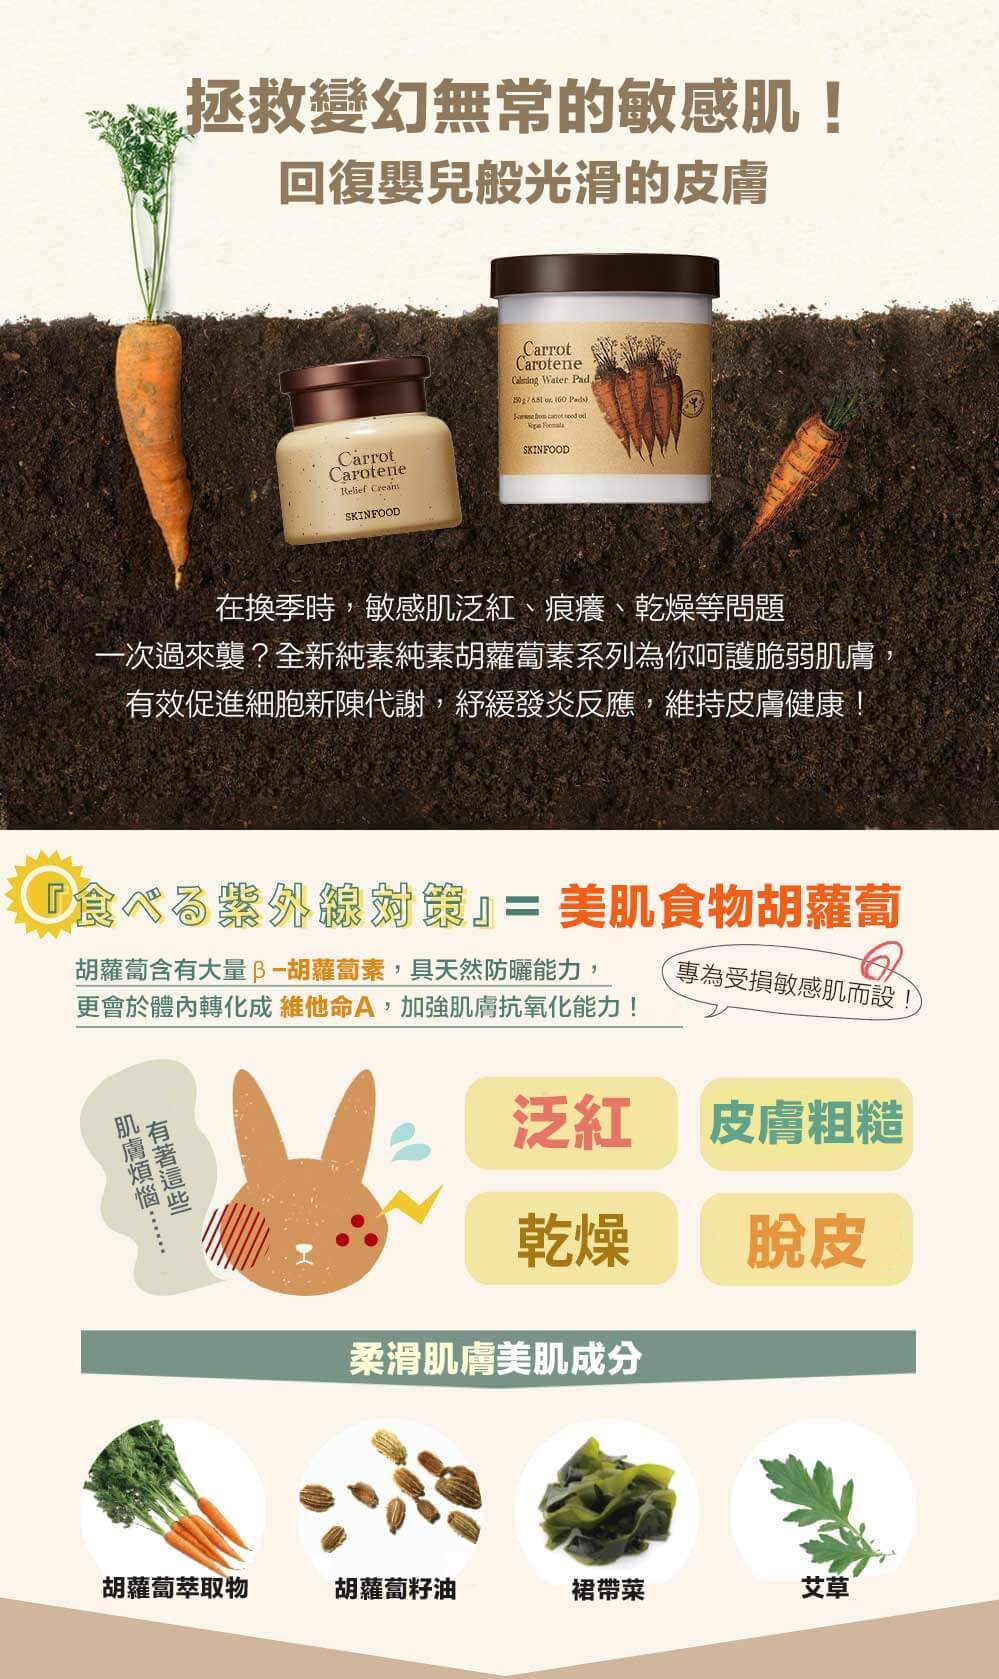 韓國食品-[Skinfood] 純素胡蘿蔔素鎮靜護理墊 250g (60 pads)